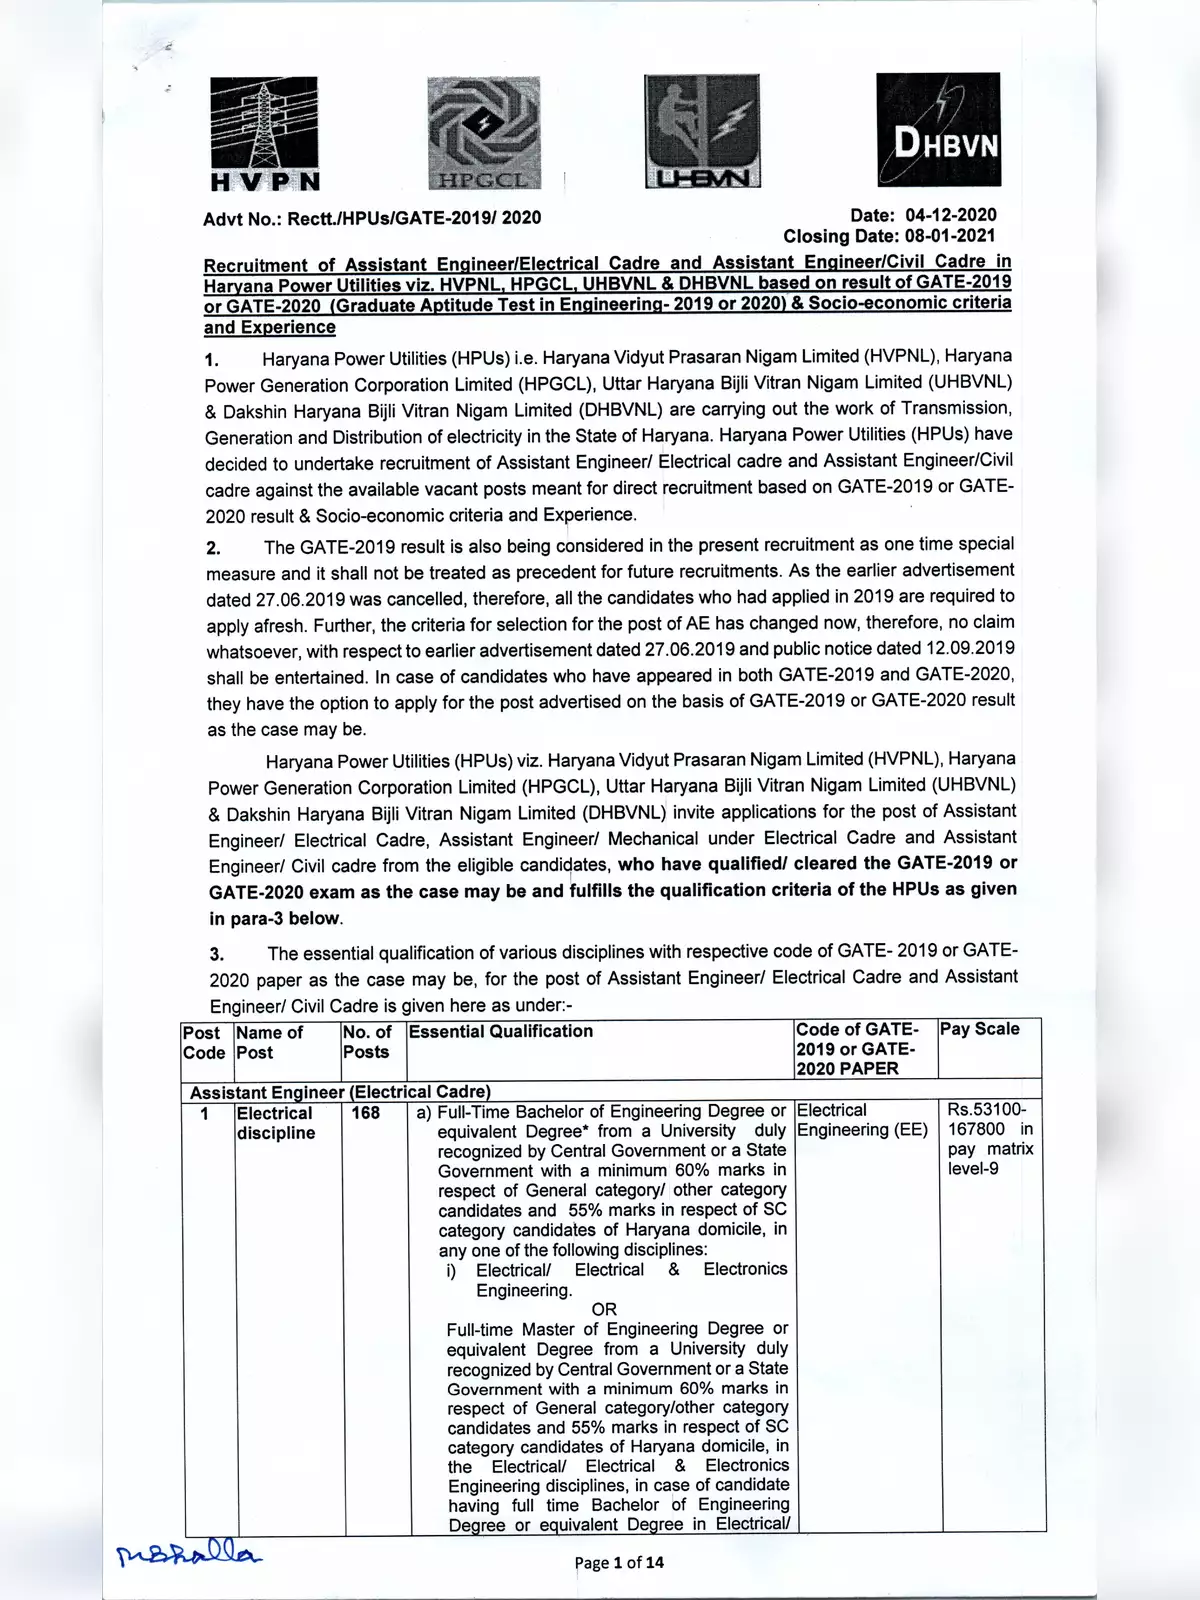 Haryana Vidyut AE Recruitment Notification 2020